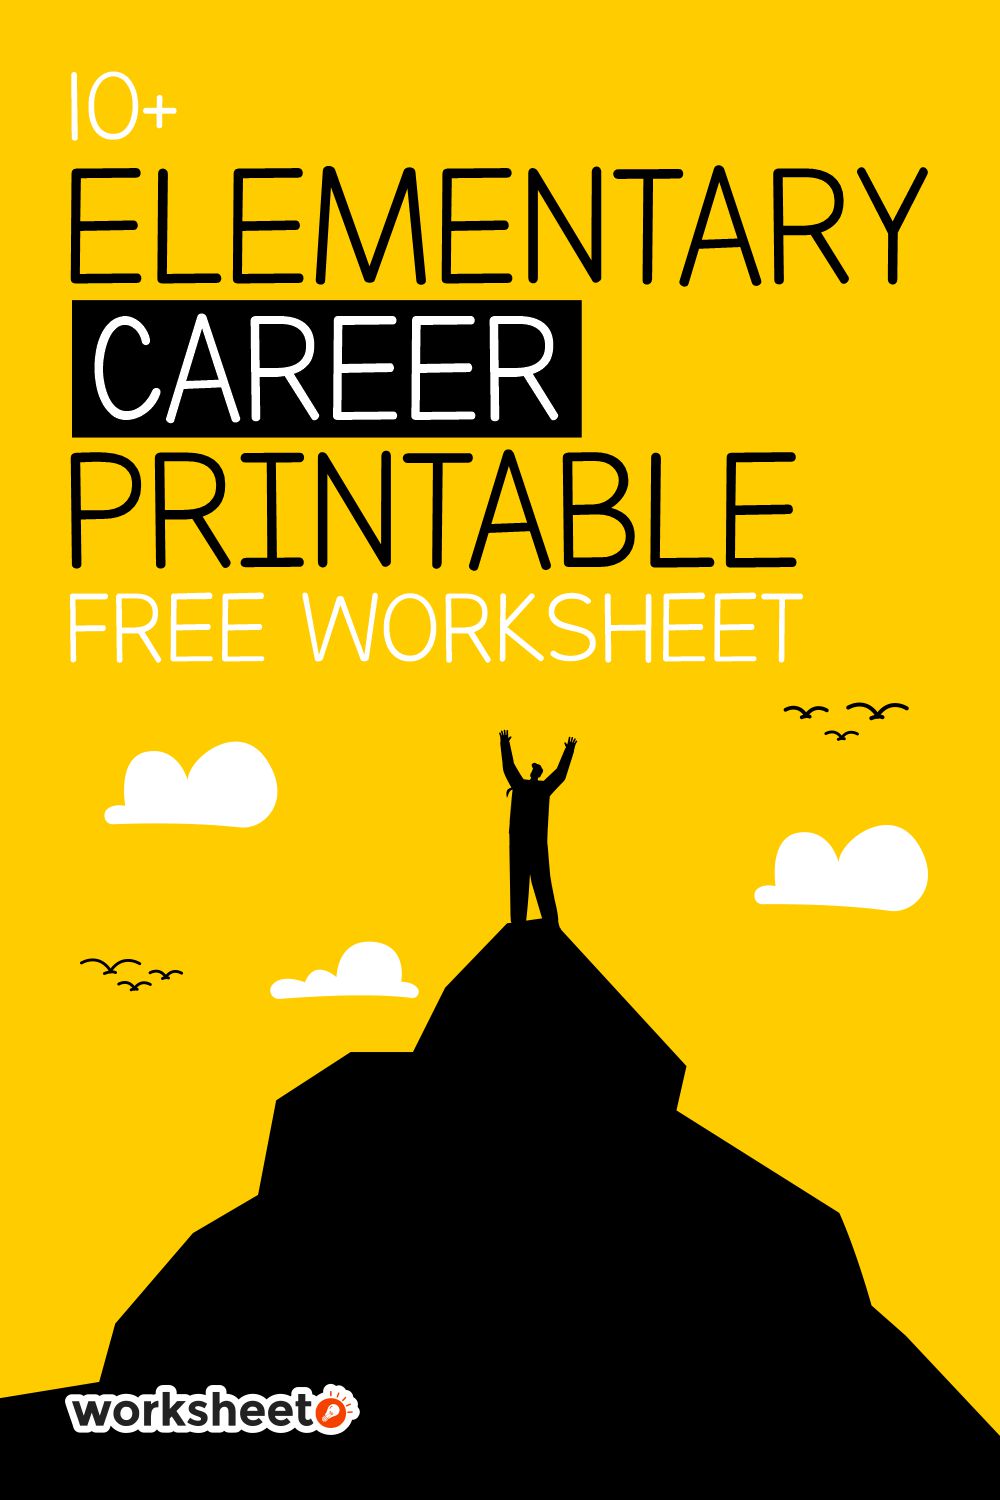 16 Elementary Career Printable Free Worksheet Worksheeto